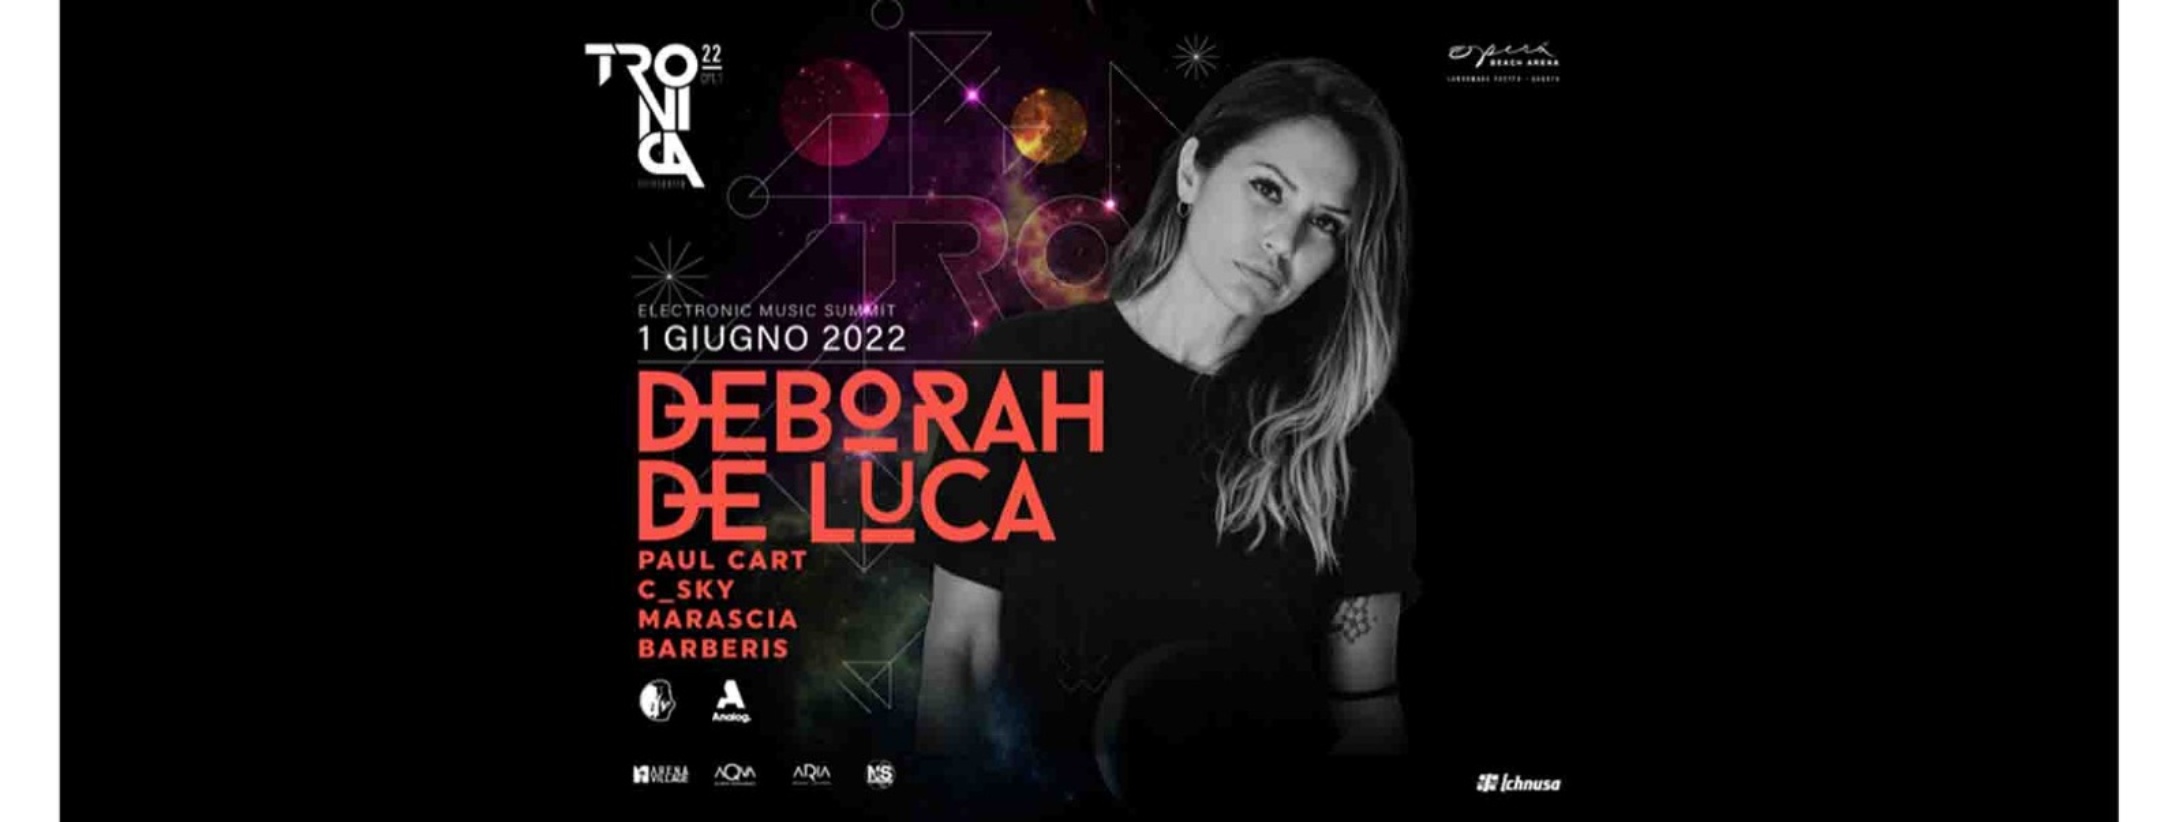 Deborah De Luca Opera Beach Arena 01 giugno 2022